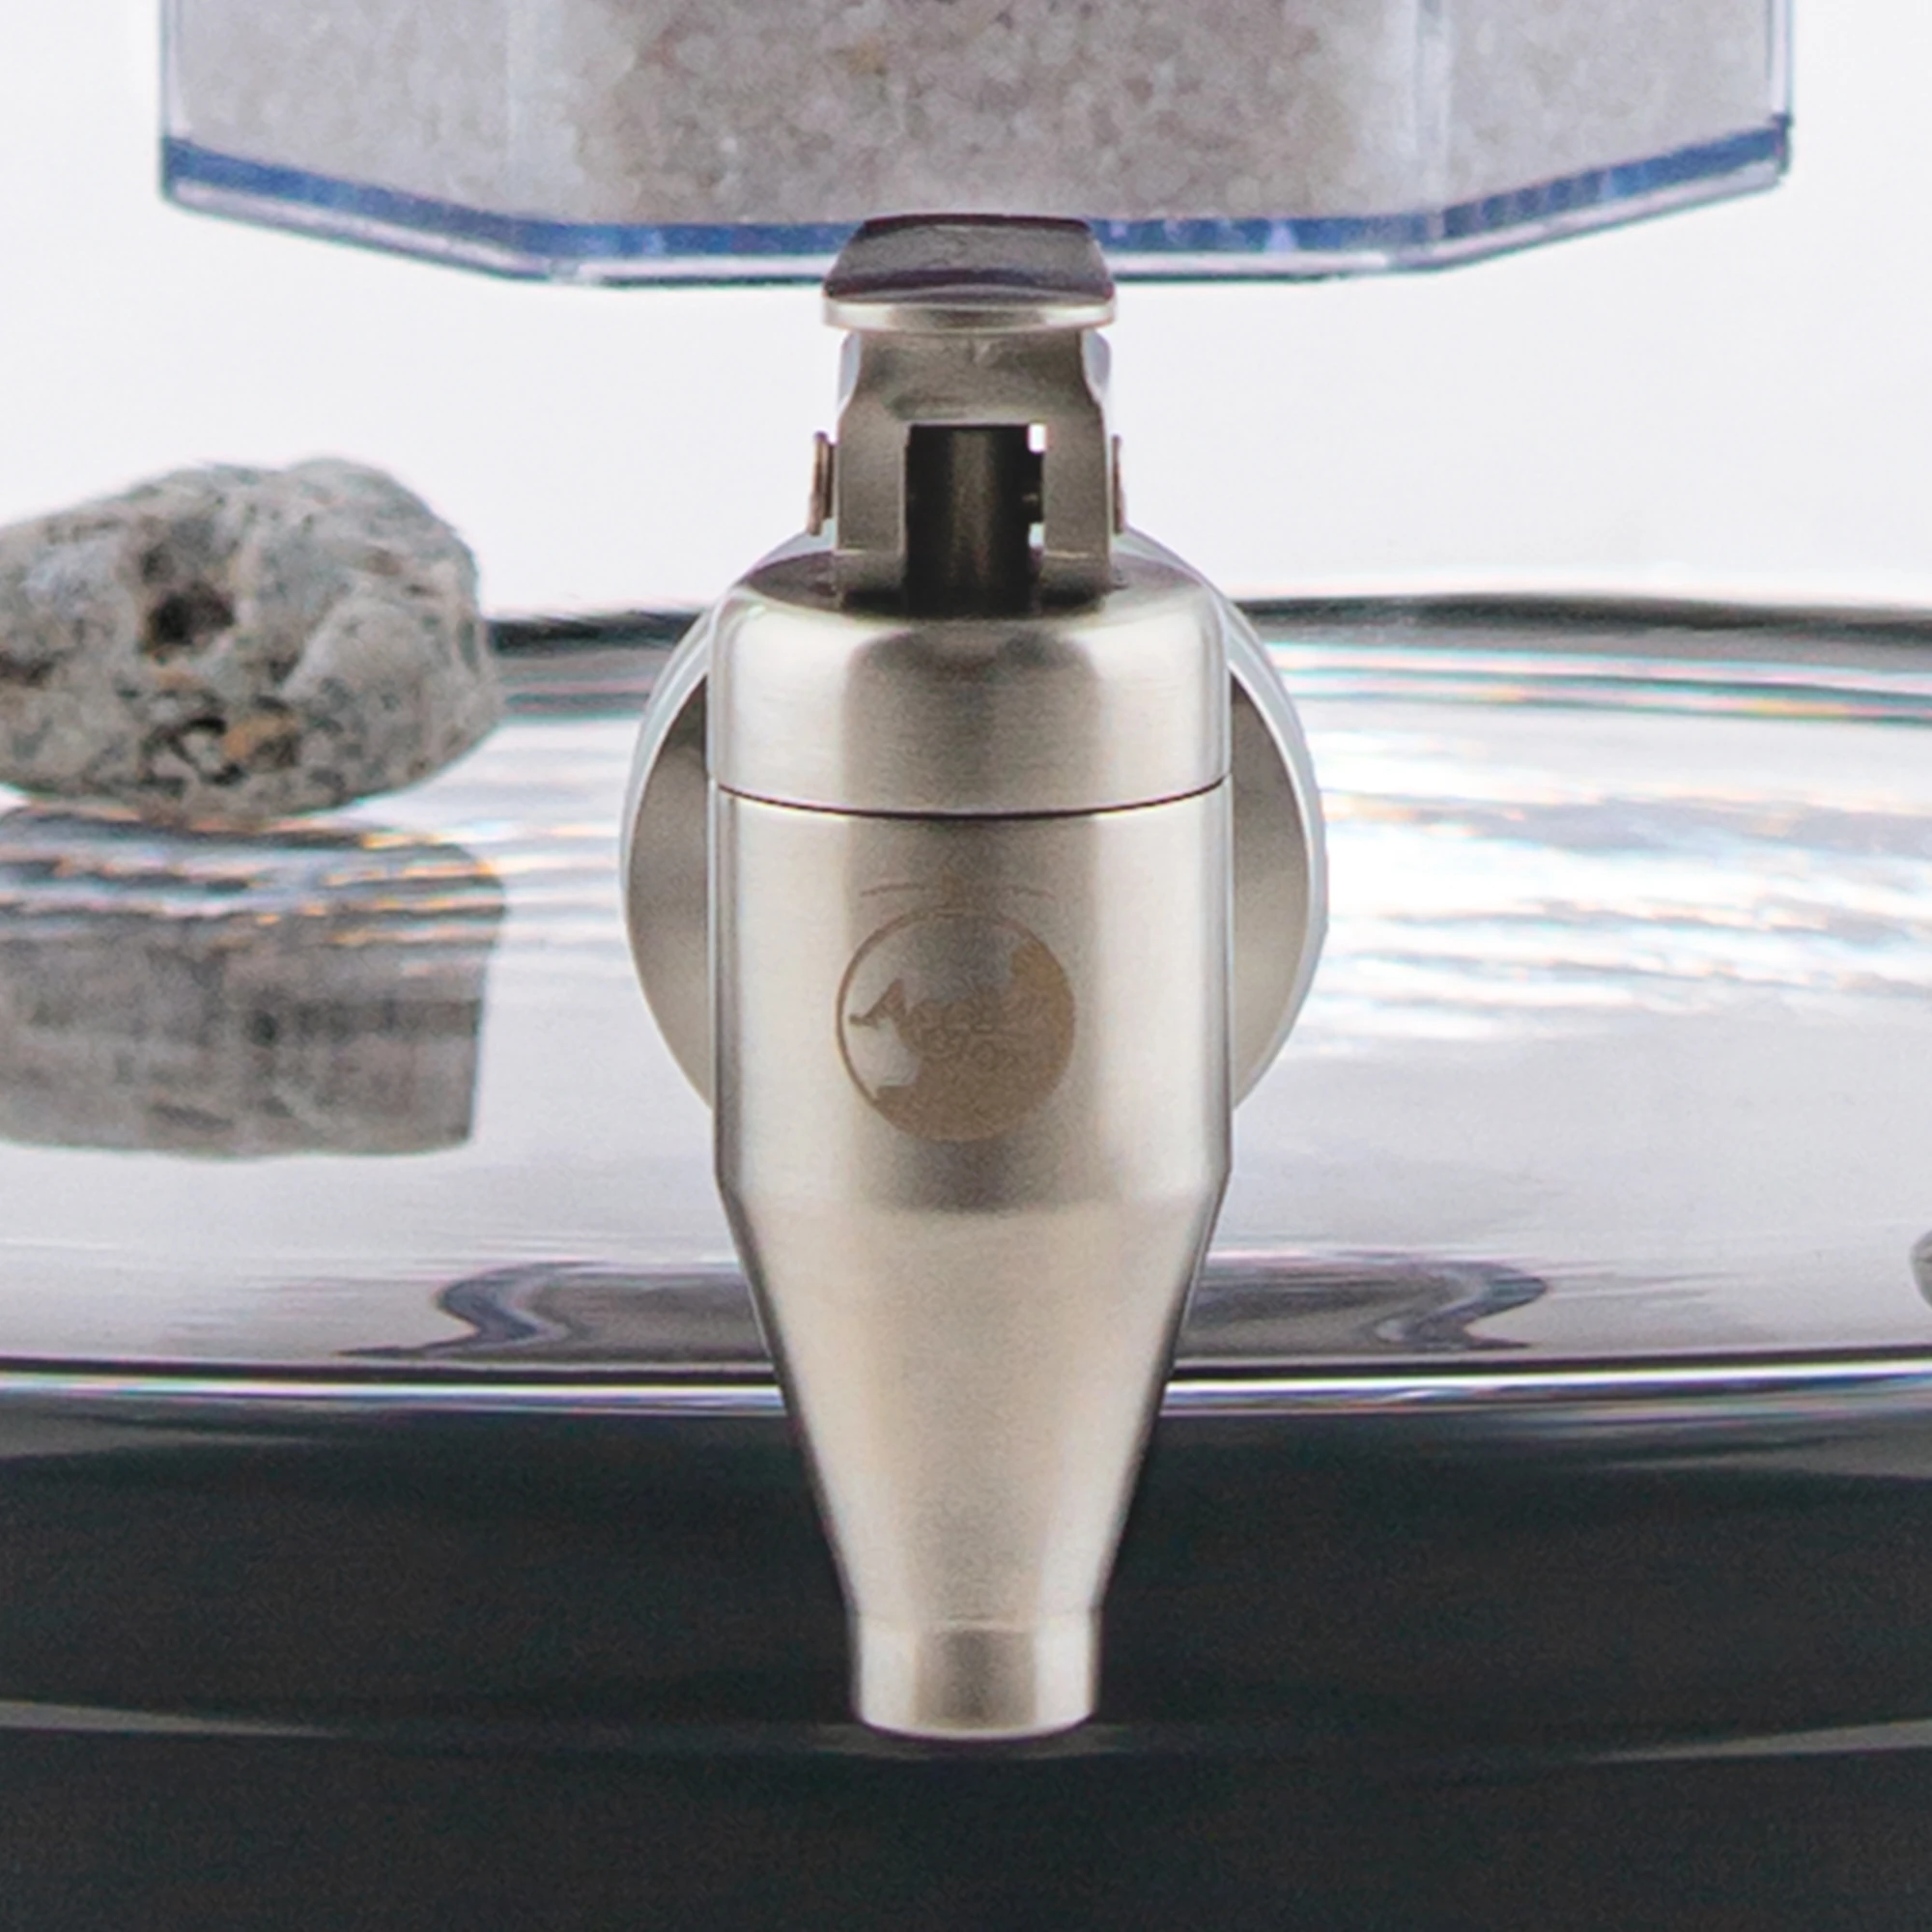 Zu sehen ist der Edelstahl Wasserhahn Yamashita für Standfilter an einem Glastank in kristallklar montiert. Der Hahn ist silber, man sieht vorne das AcalaQuell Logo darauf. Der Hebel zum öffnen ist nach vorne gedreht.